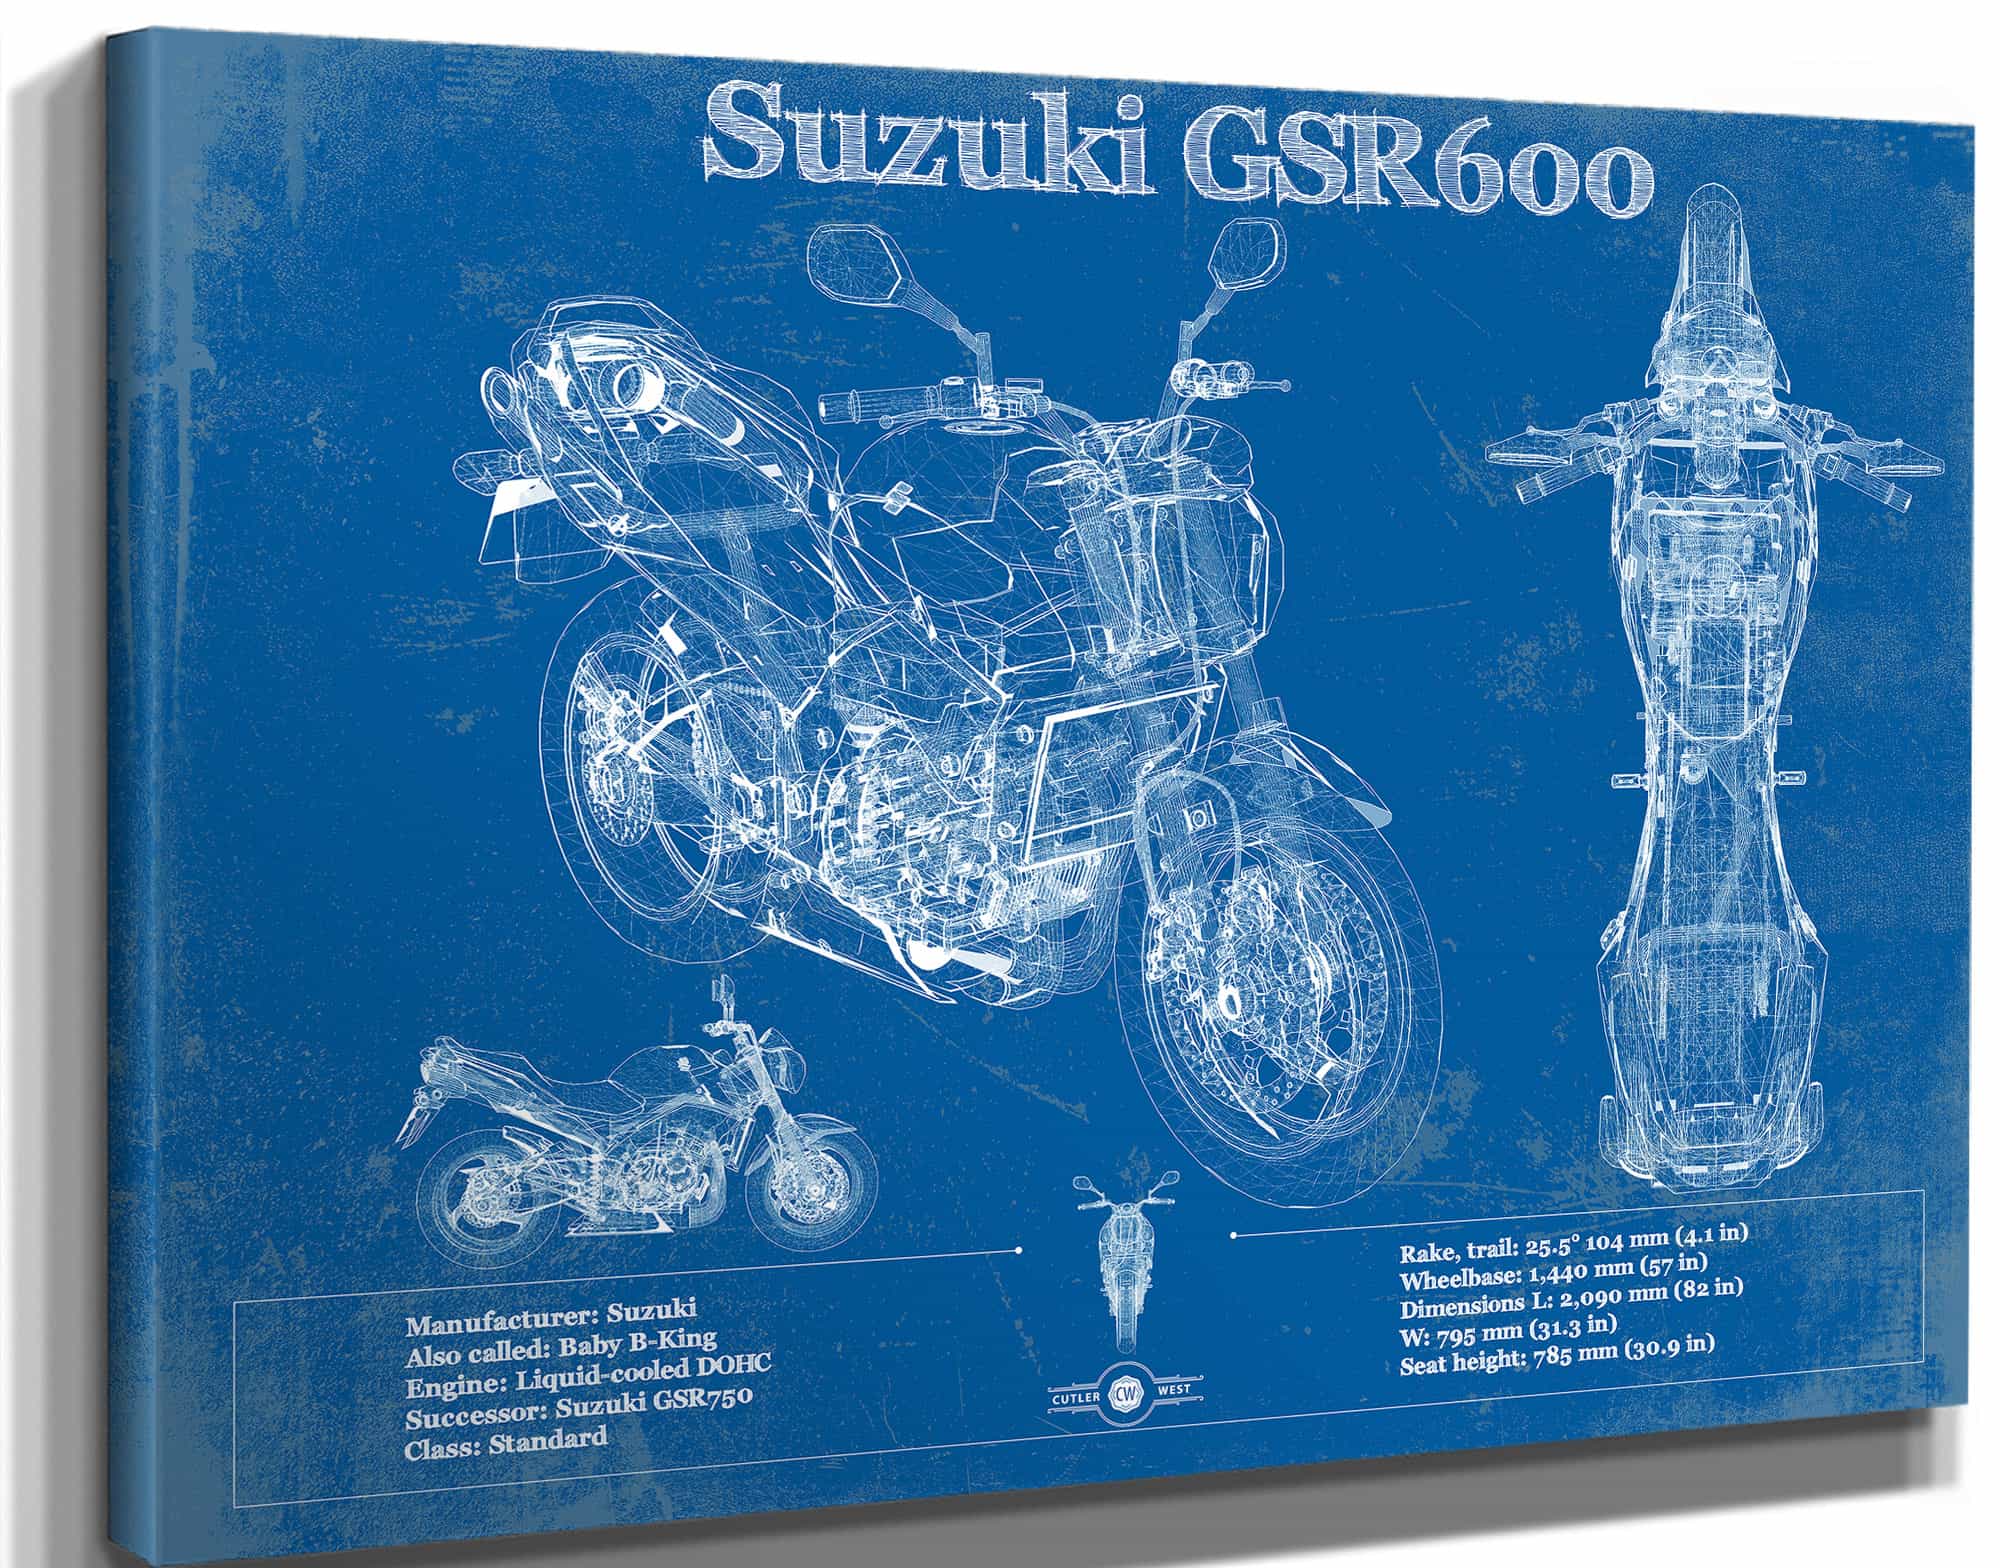 Suzuki GSR600 Blueprint Motorcycle Patent Print